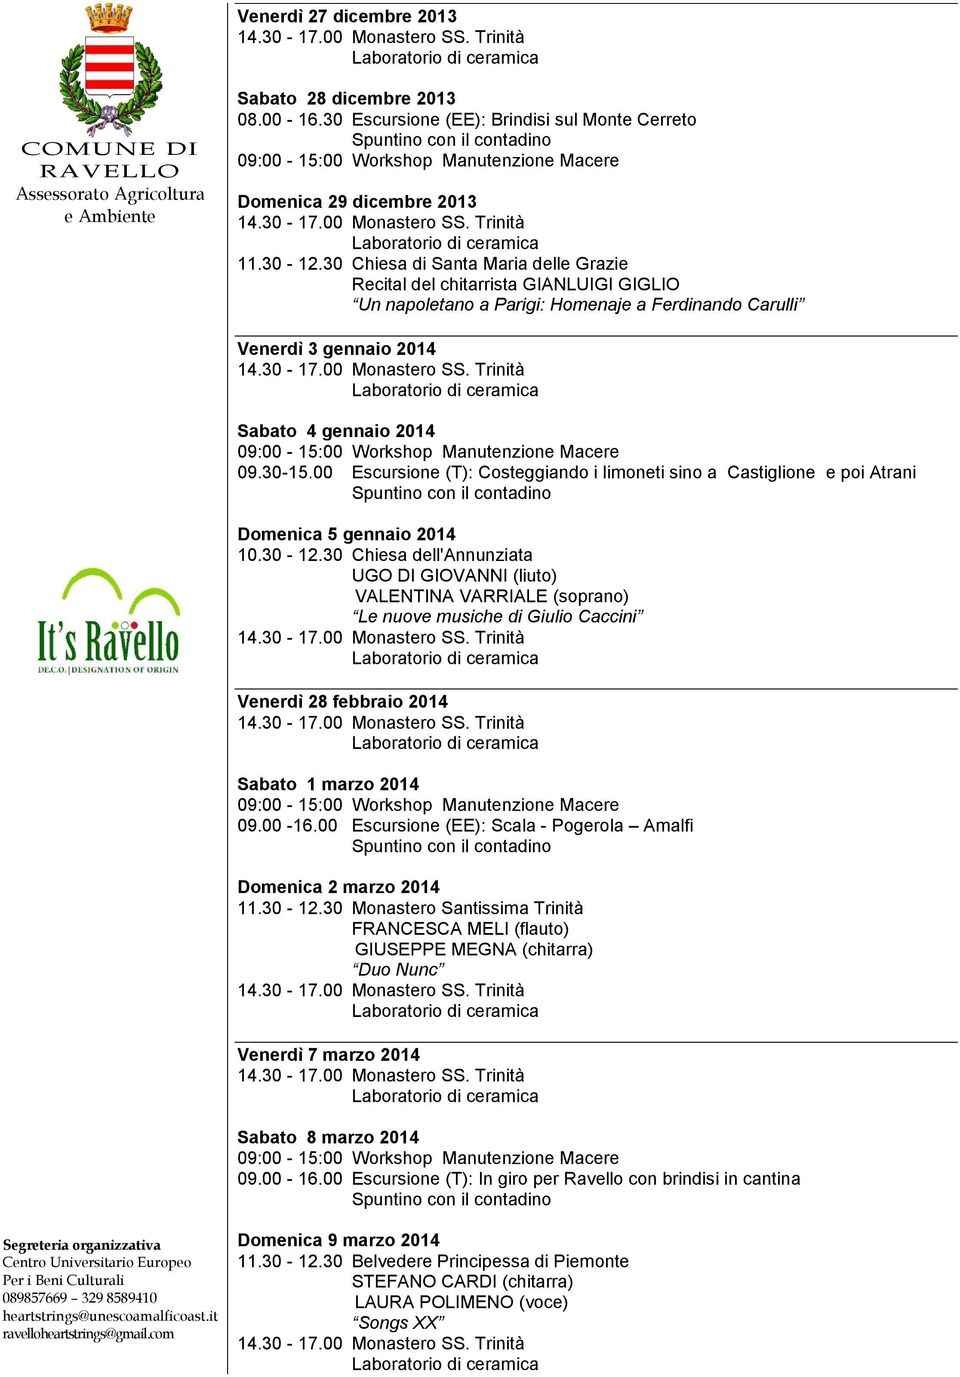 00 Escursione (T): Costeggiando i limoneti sino a Castiglione e poi Atrani Domenica 5 gennaio 2014 10.30-12.